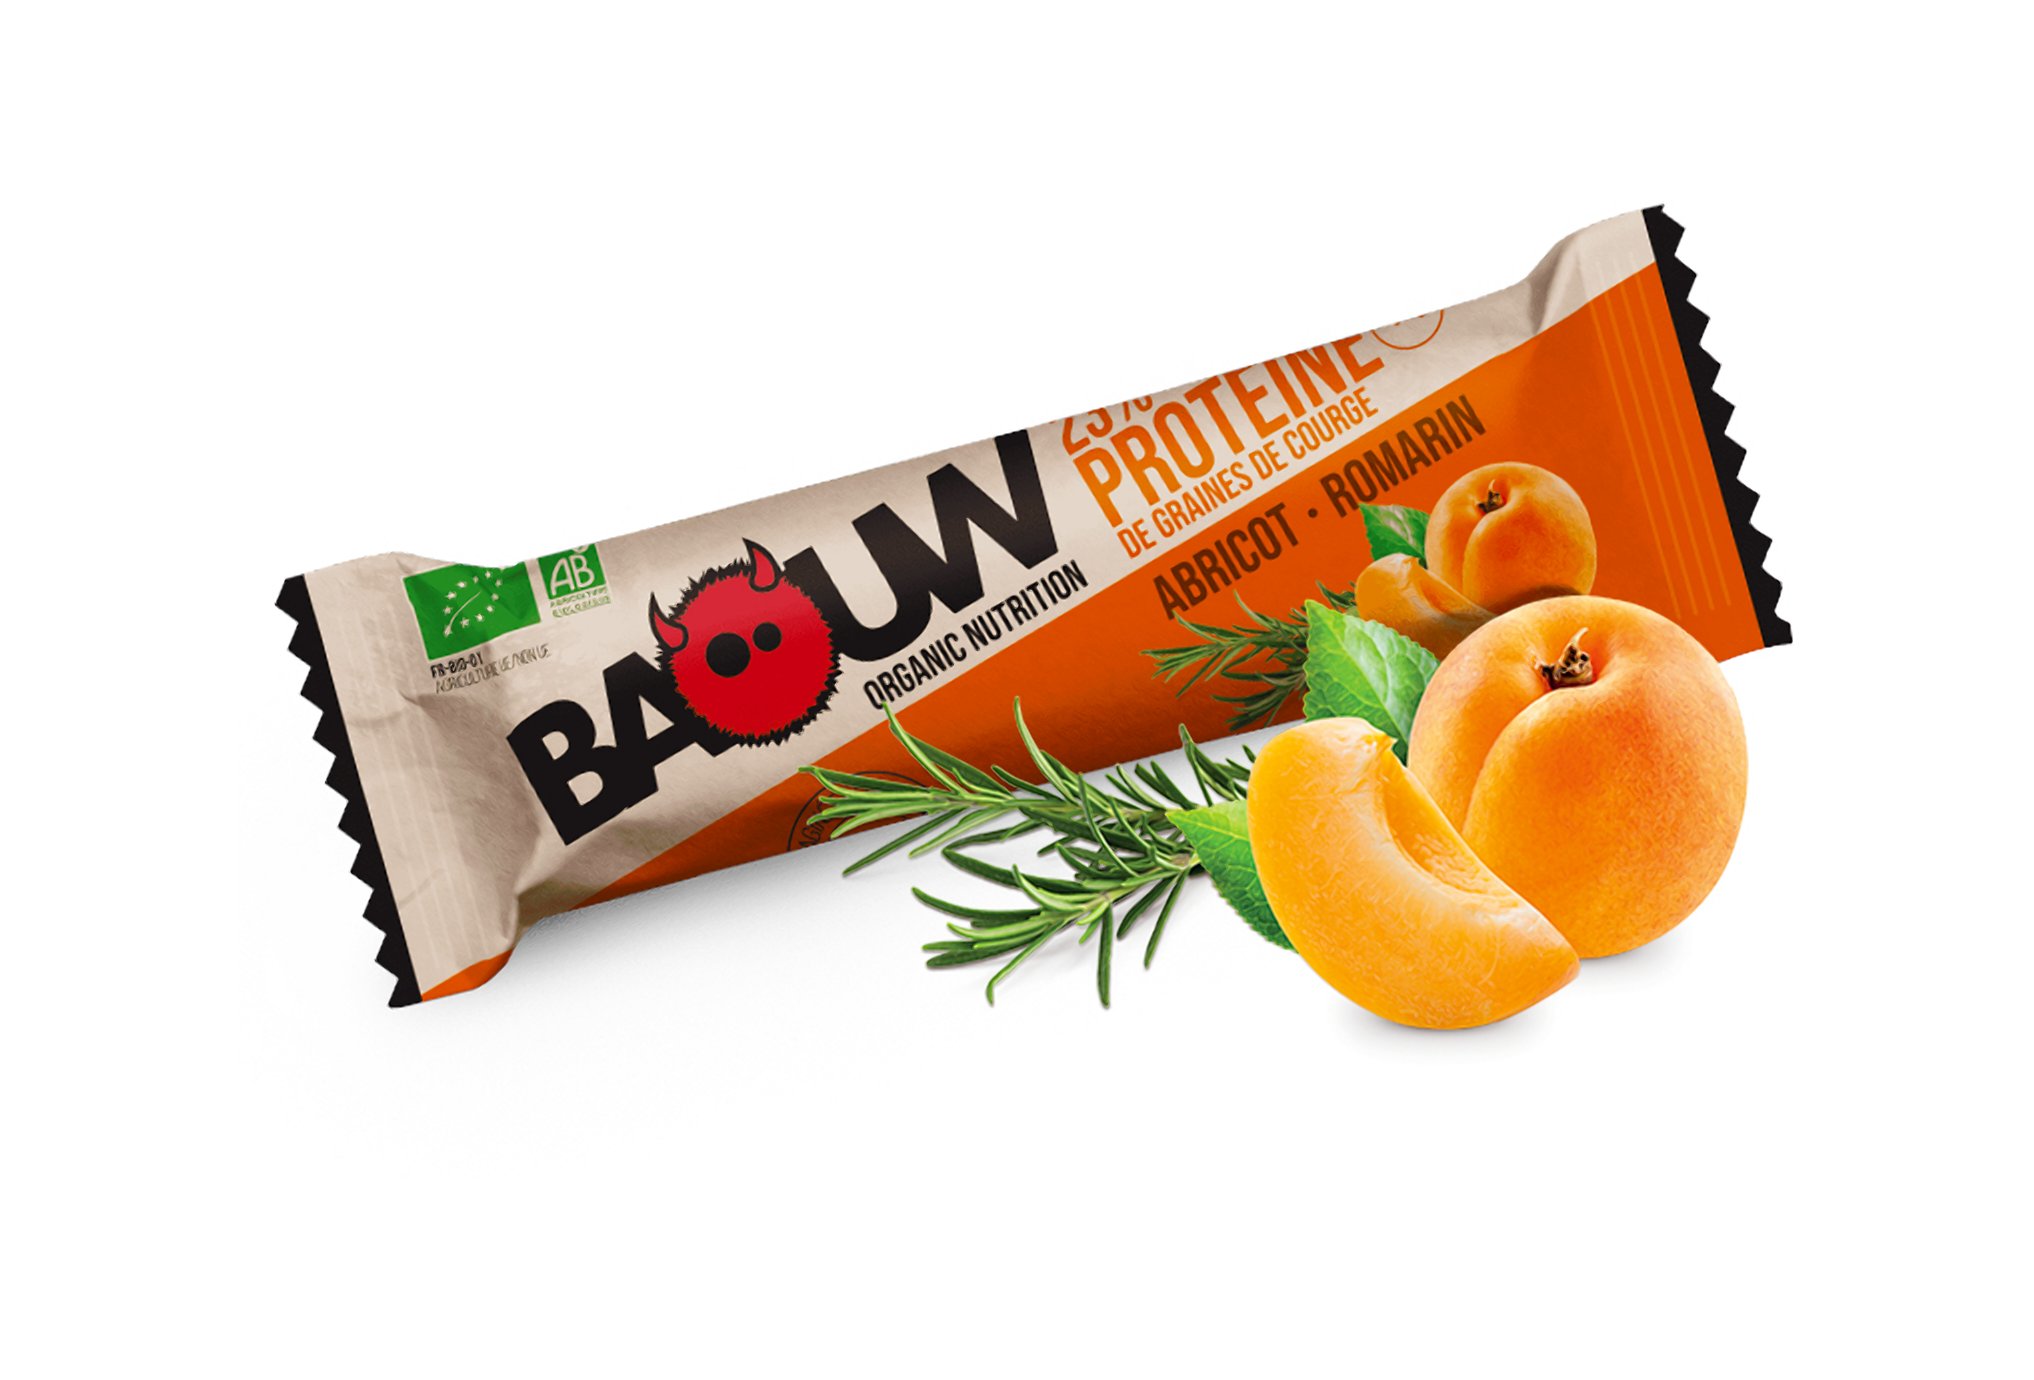 Baouw Barre protéinée bio - Protéine de graines de courge - Abricot - Romarin Diététique Barres